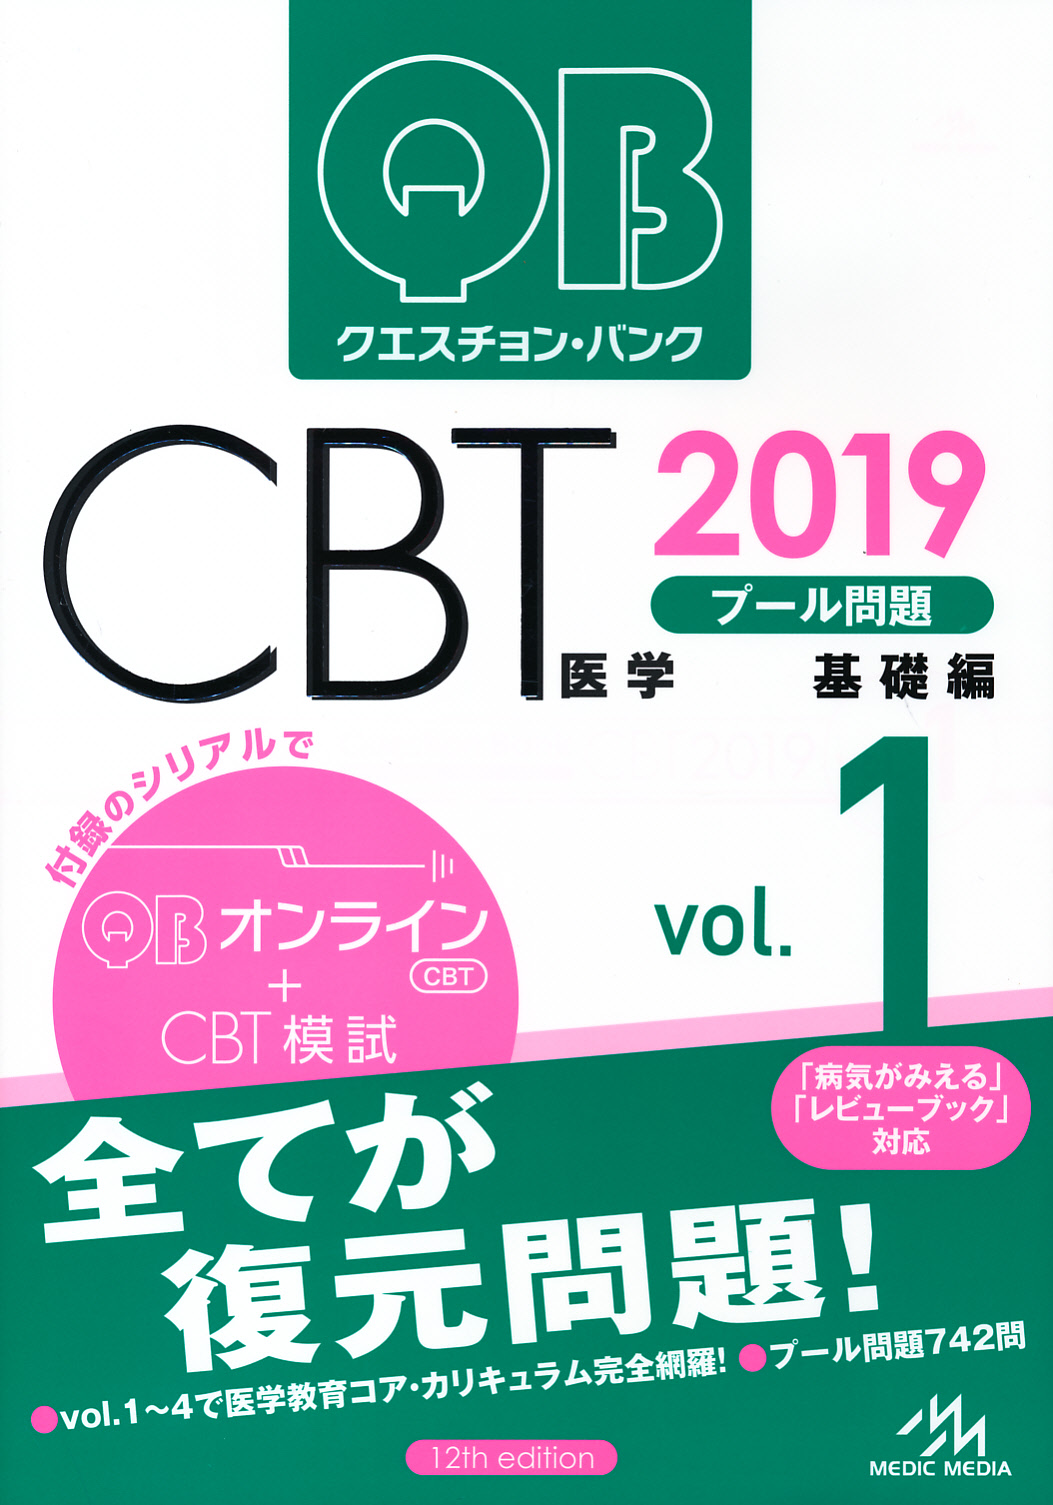 クエスチョン・バンク CBT 2019 vol.1 プール問題 基礎編-